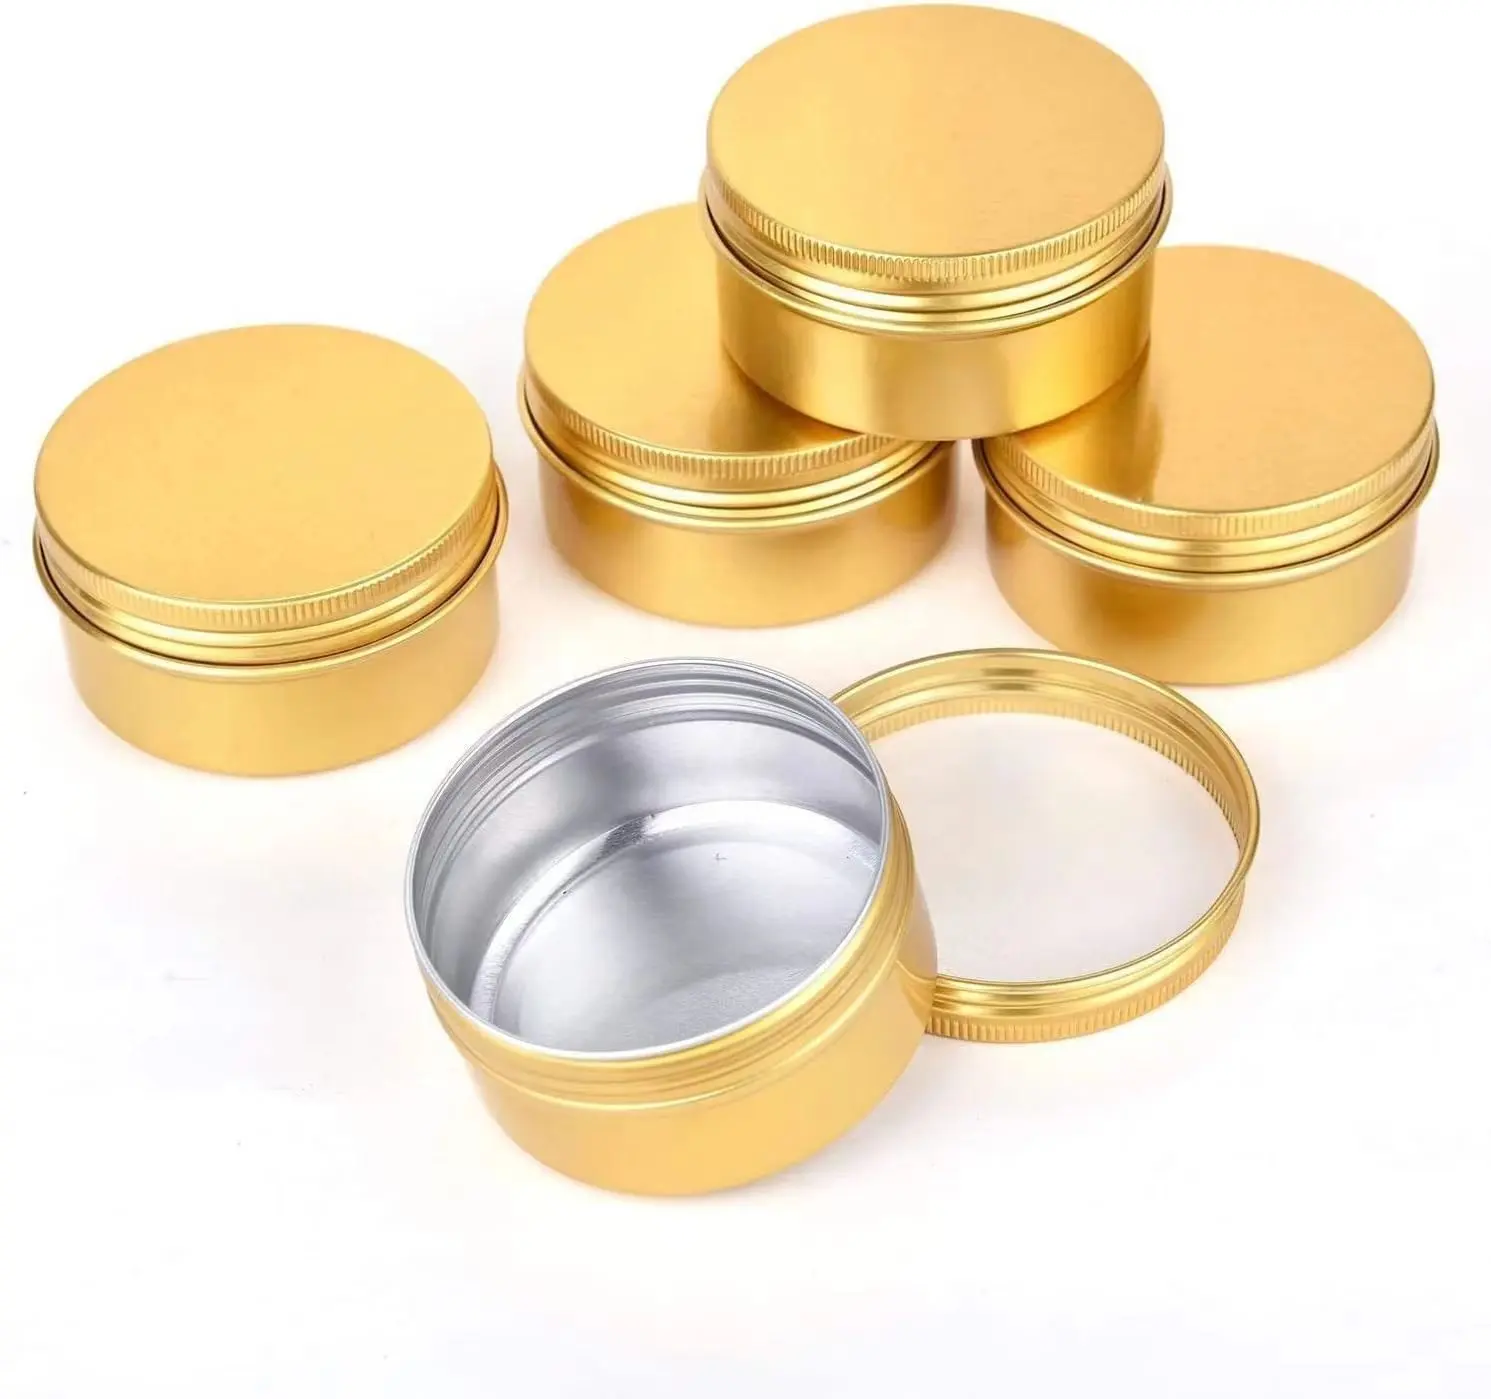 Metall Runde Balsam Dosen Aluminium Kosmetik gläser Dosen Leere Behälter mit Schraub deckel für Salve Gewürze Kerzen